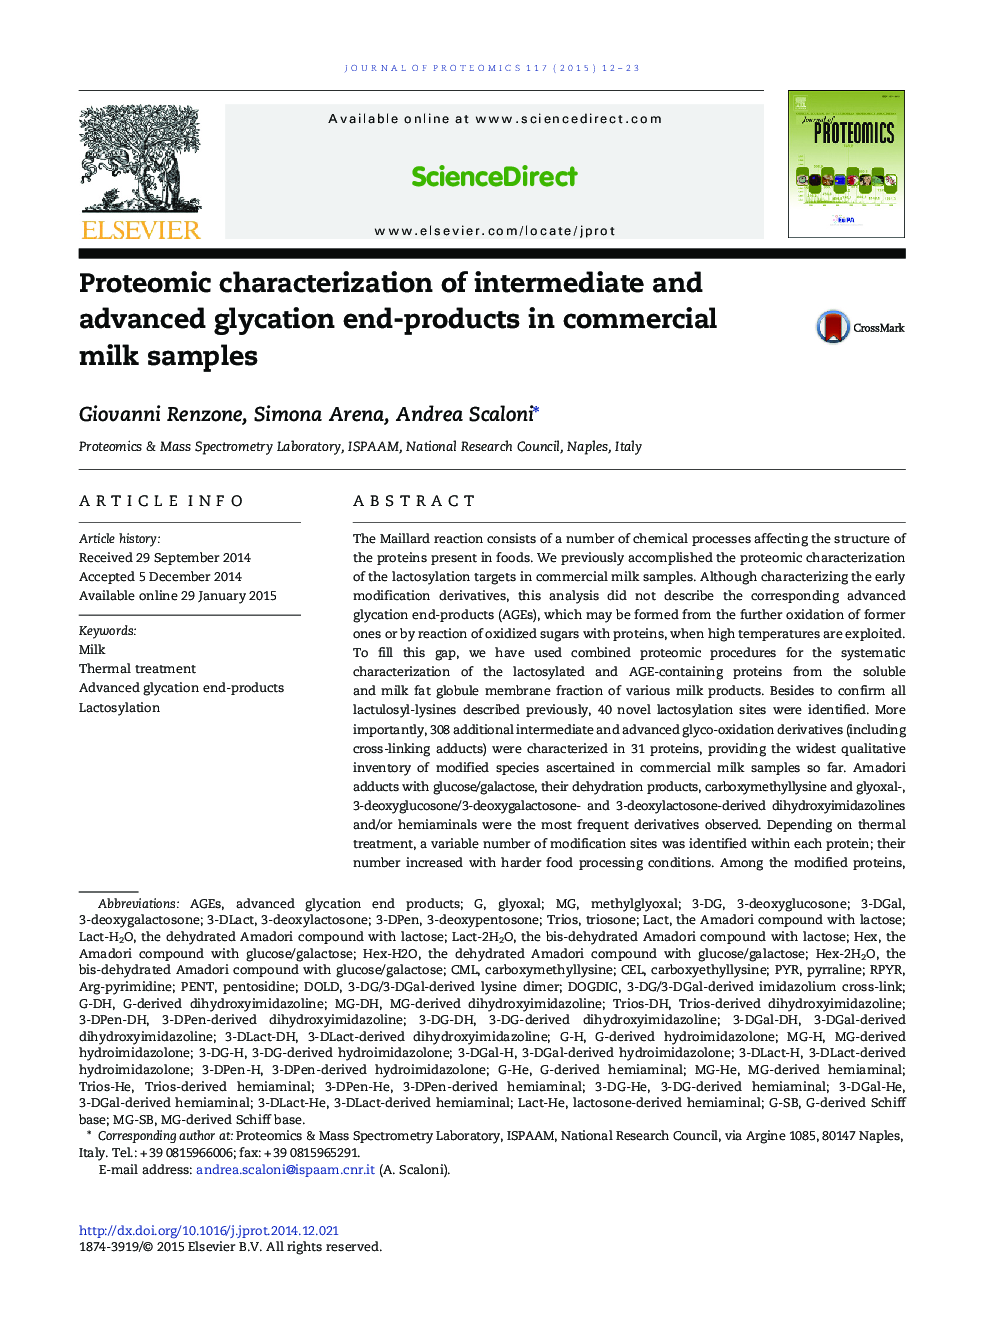 خصوصیات پروتئومومی محصولات پایانی متوسط ​​و پیشرفته در نمونه های شکر تجاری 